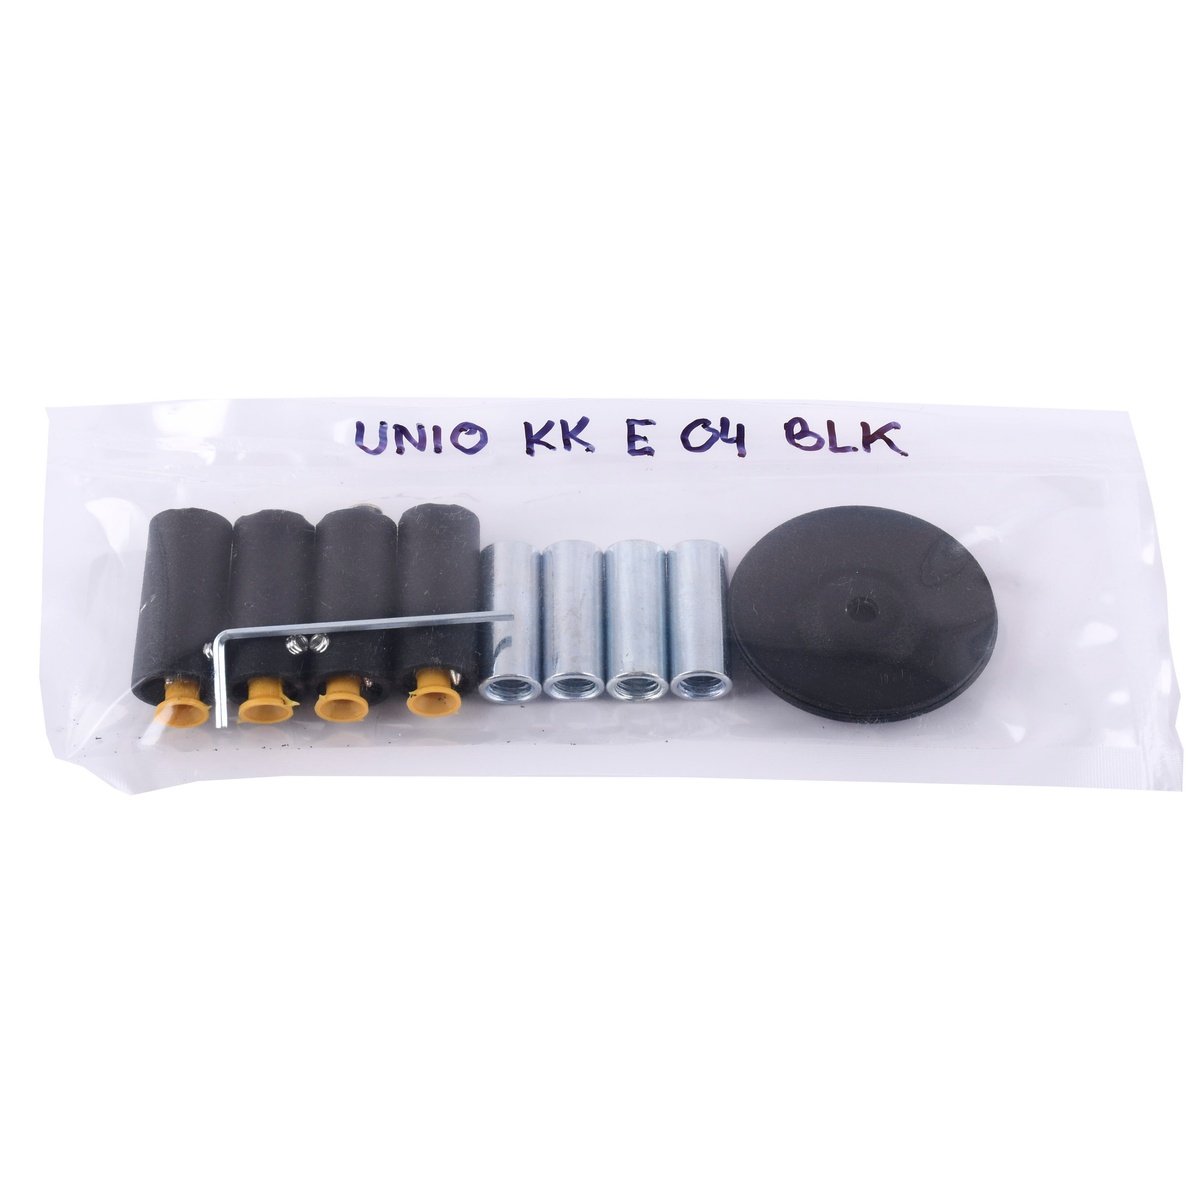 Комплект креплений для полотенцесушителя UNIO KK E 04 BLK черный 000027925